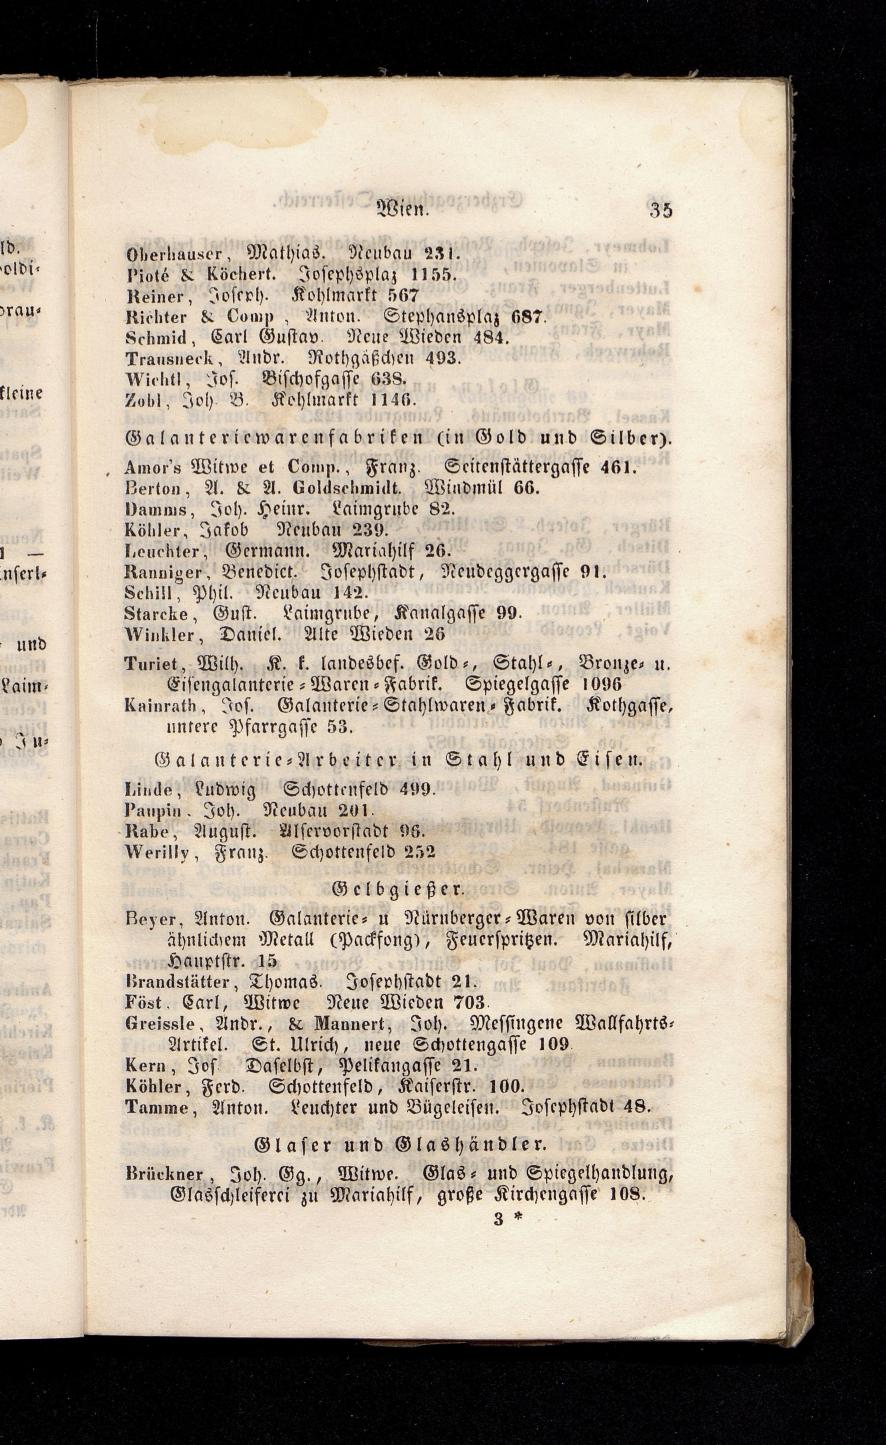 Grosses Adressbuch der Kaufleute. No. 13. Oesterreich ober u. unter der Enns 1844 - Seite 39